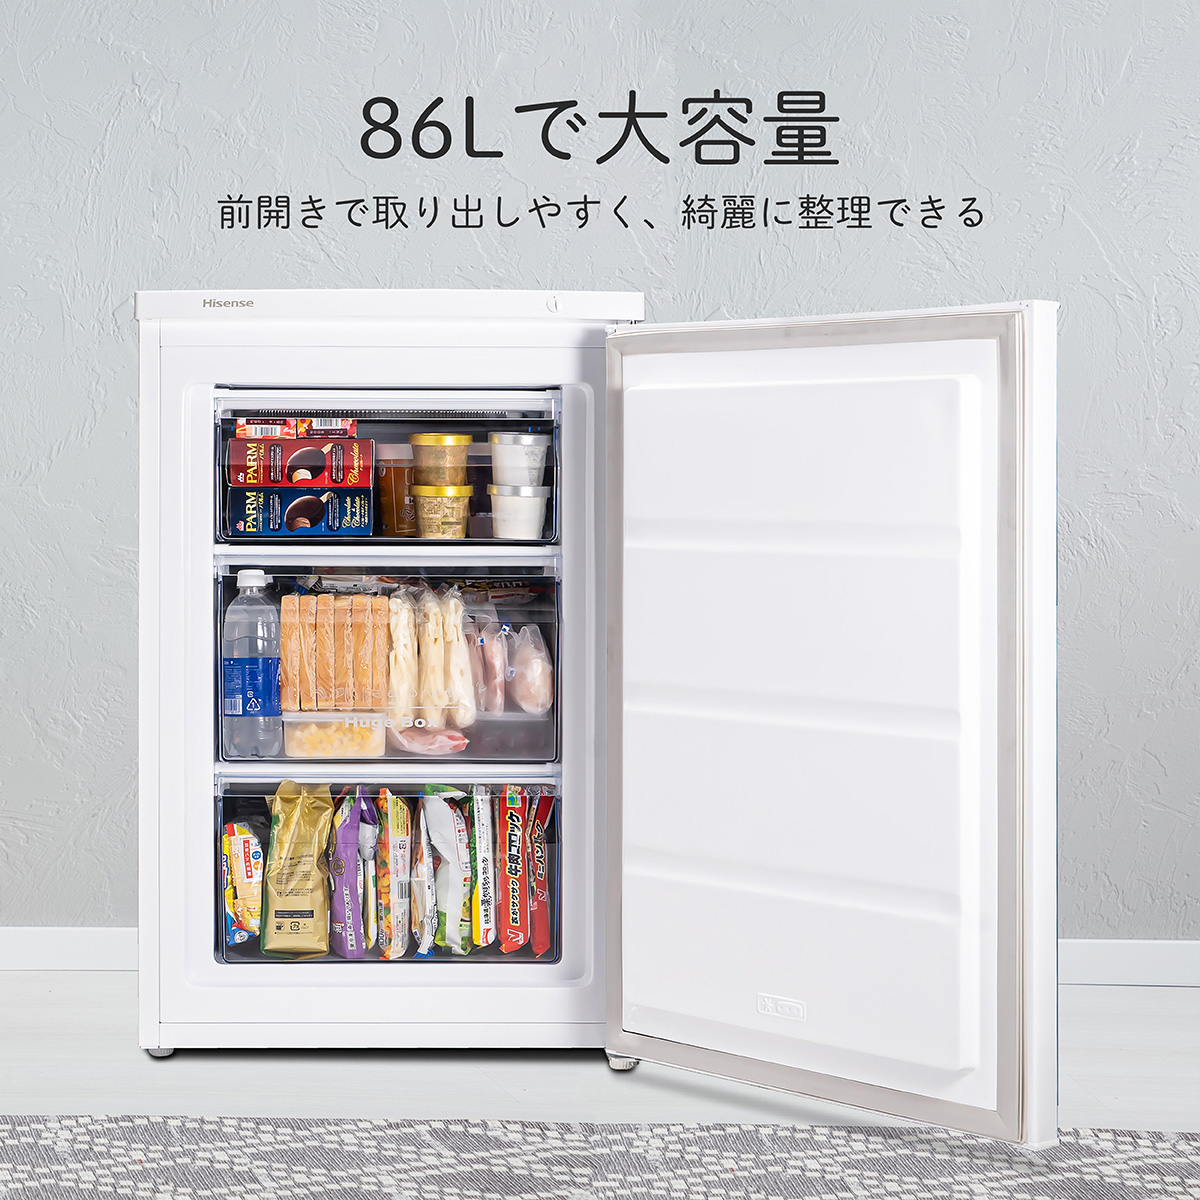 1ドア冷凍庫 86L ホワイト【配送のみ 設置なし 軒先渡し】